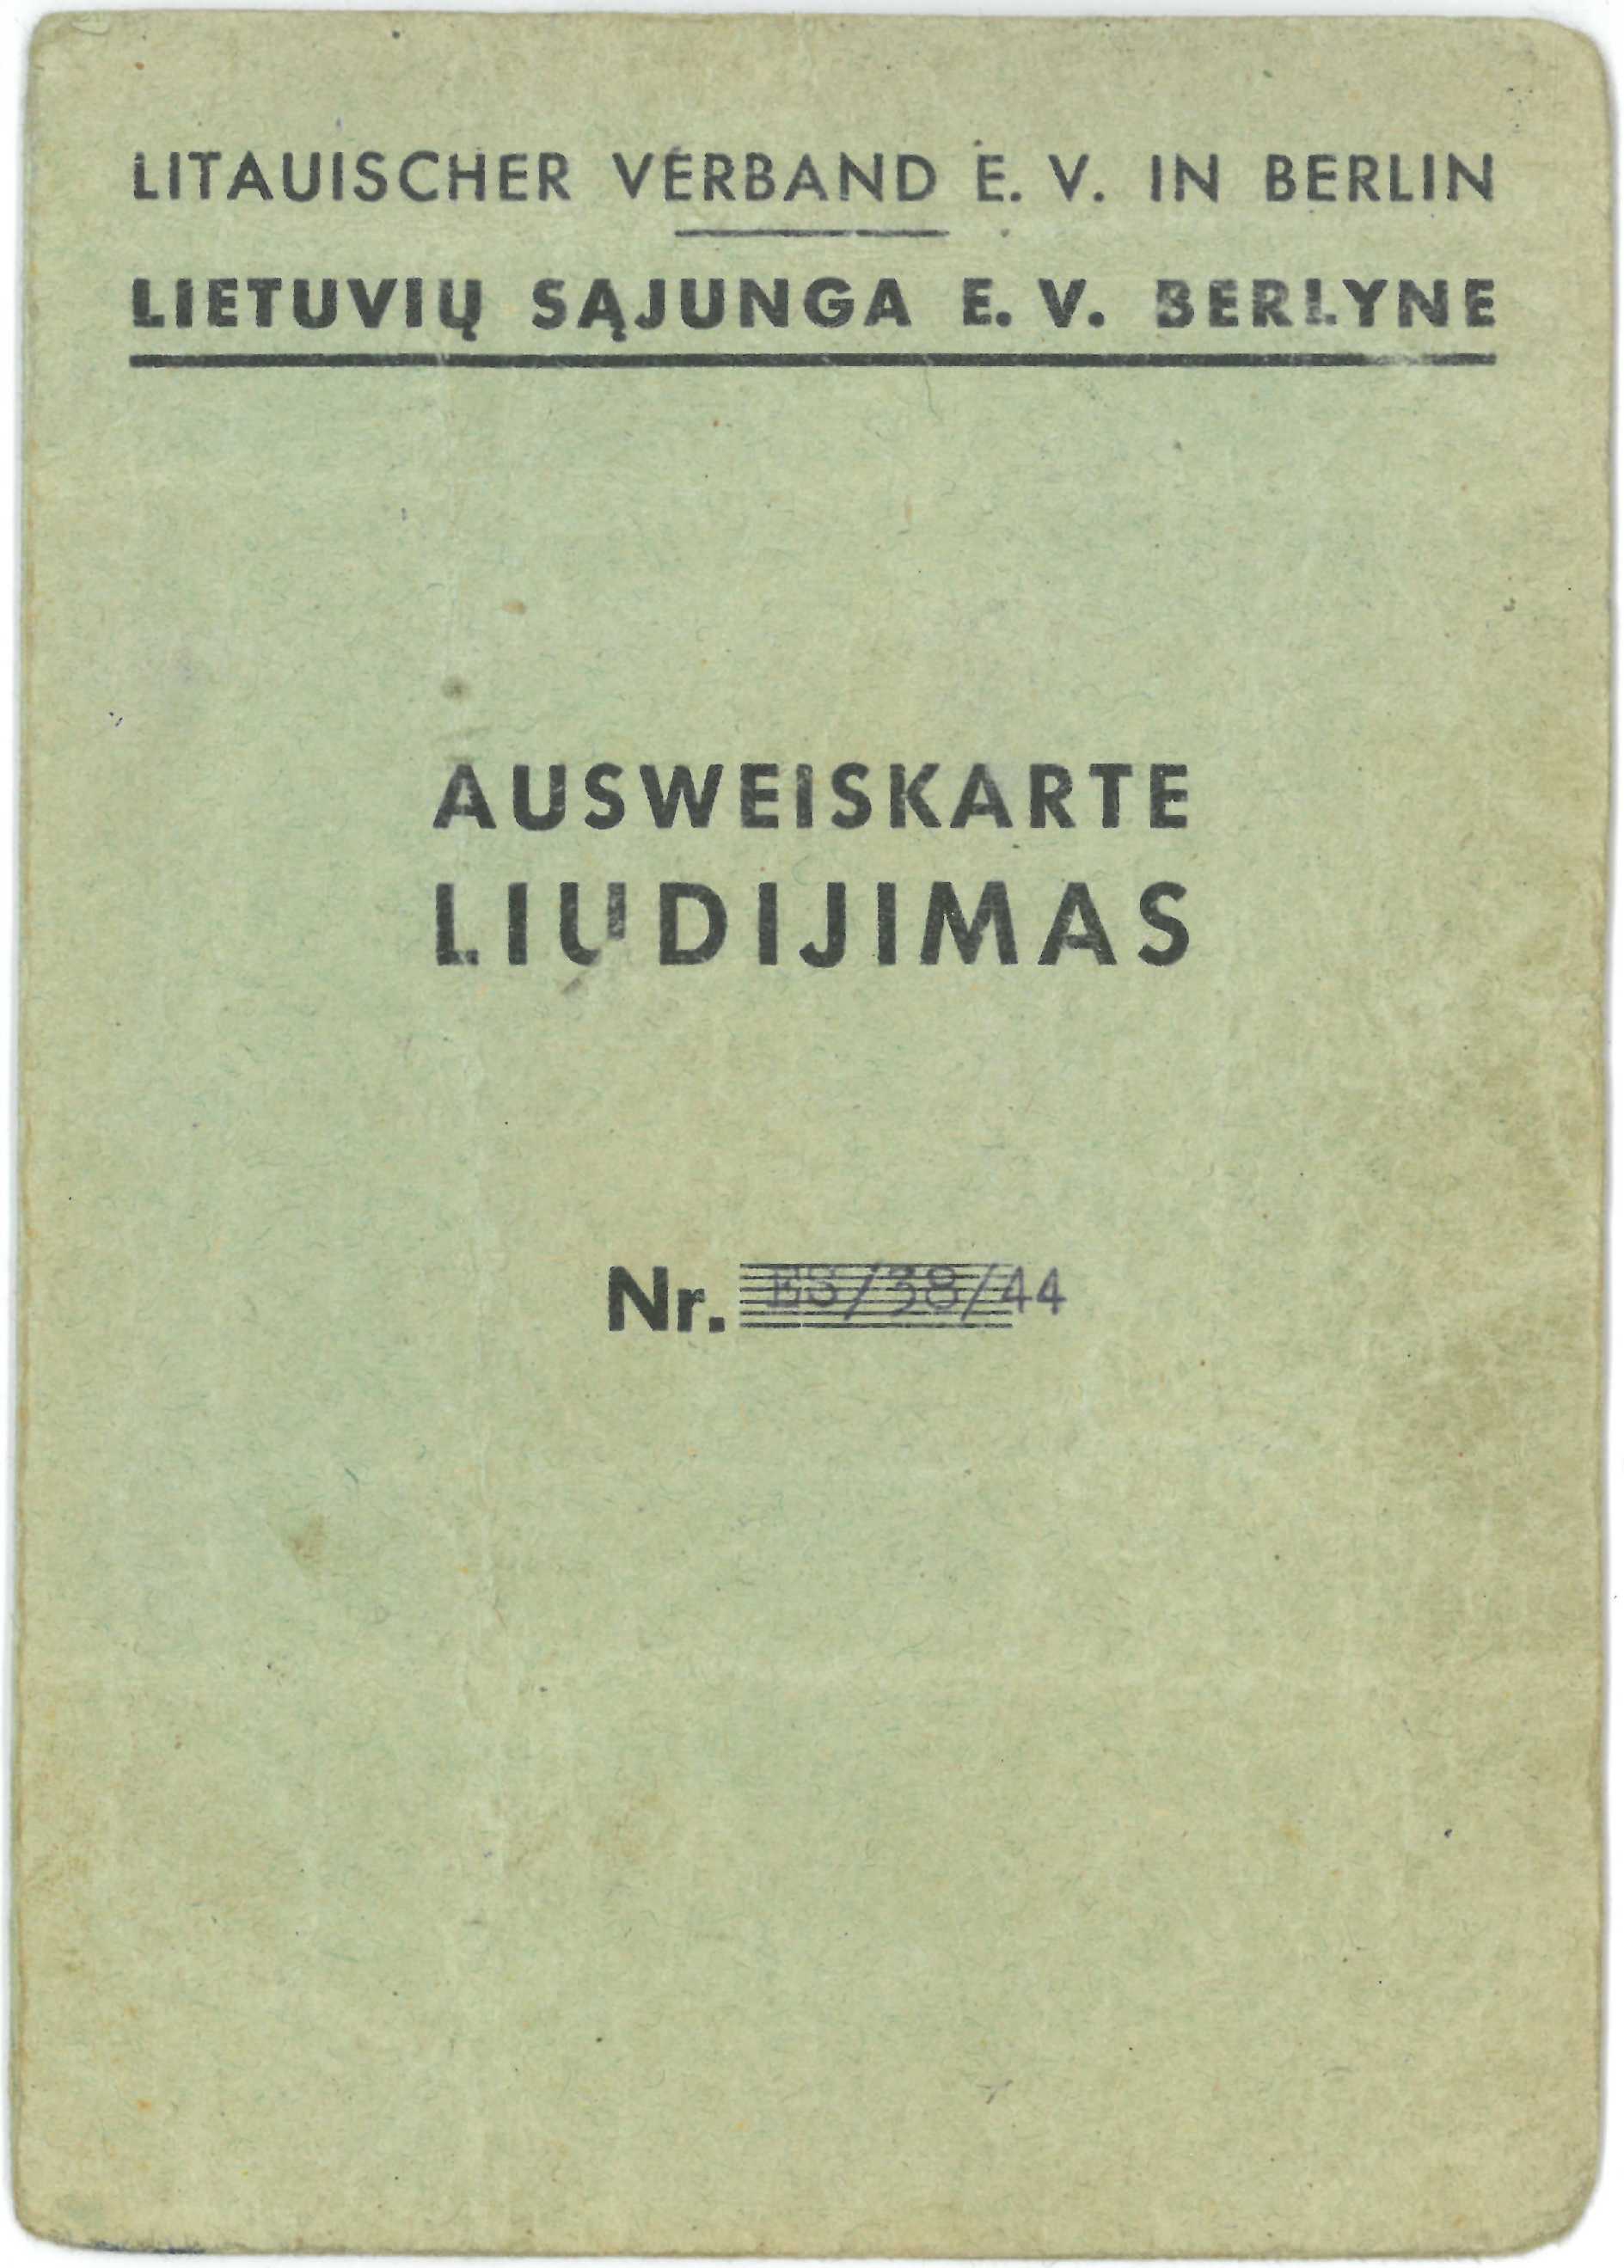 Lietuvių sąjungos Berlyne liudijimas, išduotas Česlovui Senkevičiui. 1944 m. rugpjūčio 2 d.